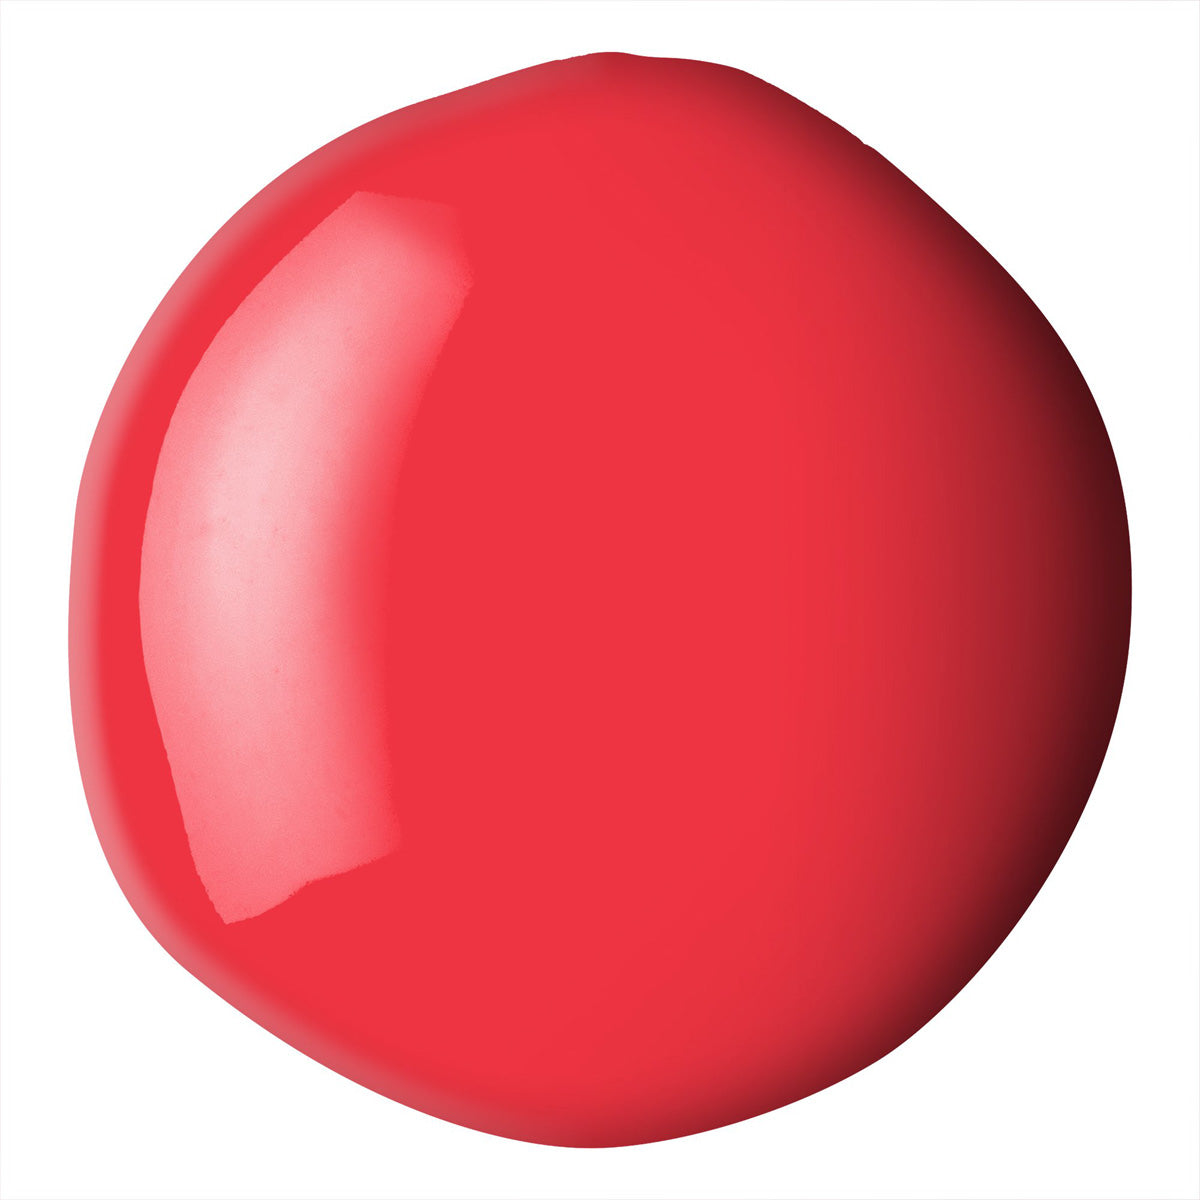 Liquitex Basics Fluid Acrylic 118ml - Cadmium Red Medium Hue S1